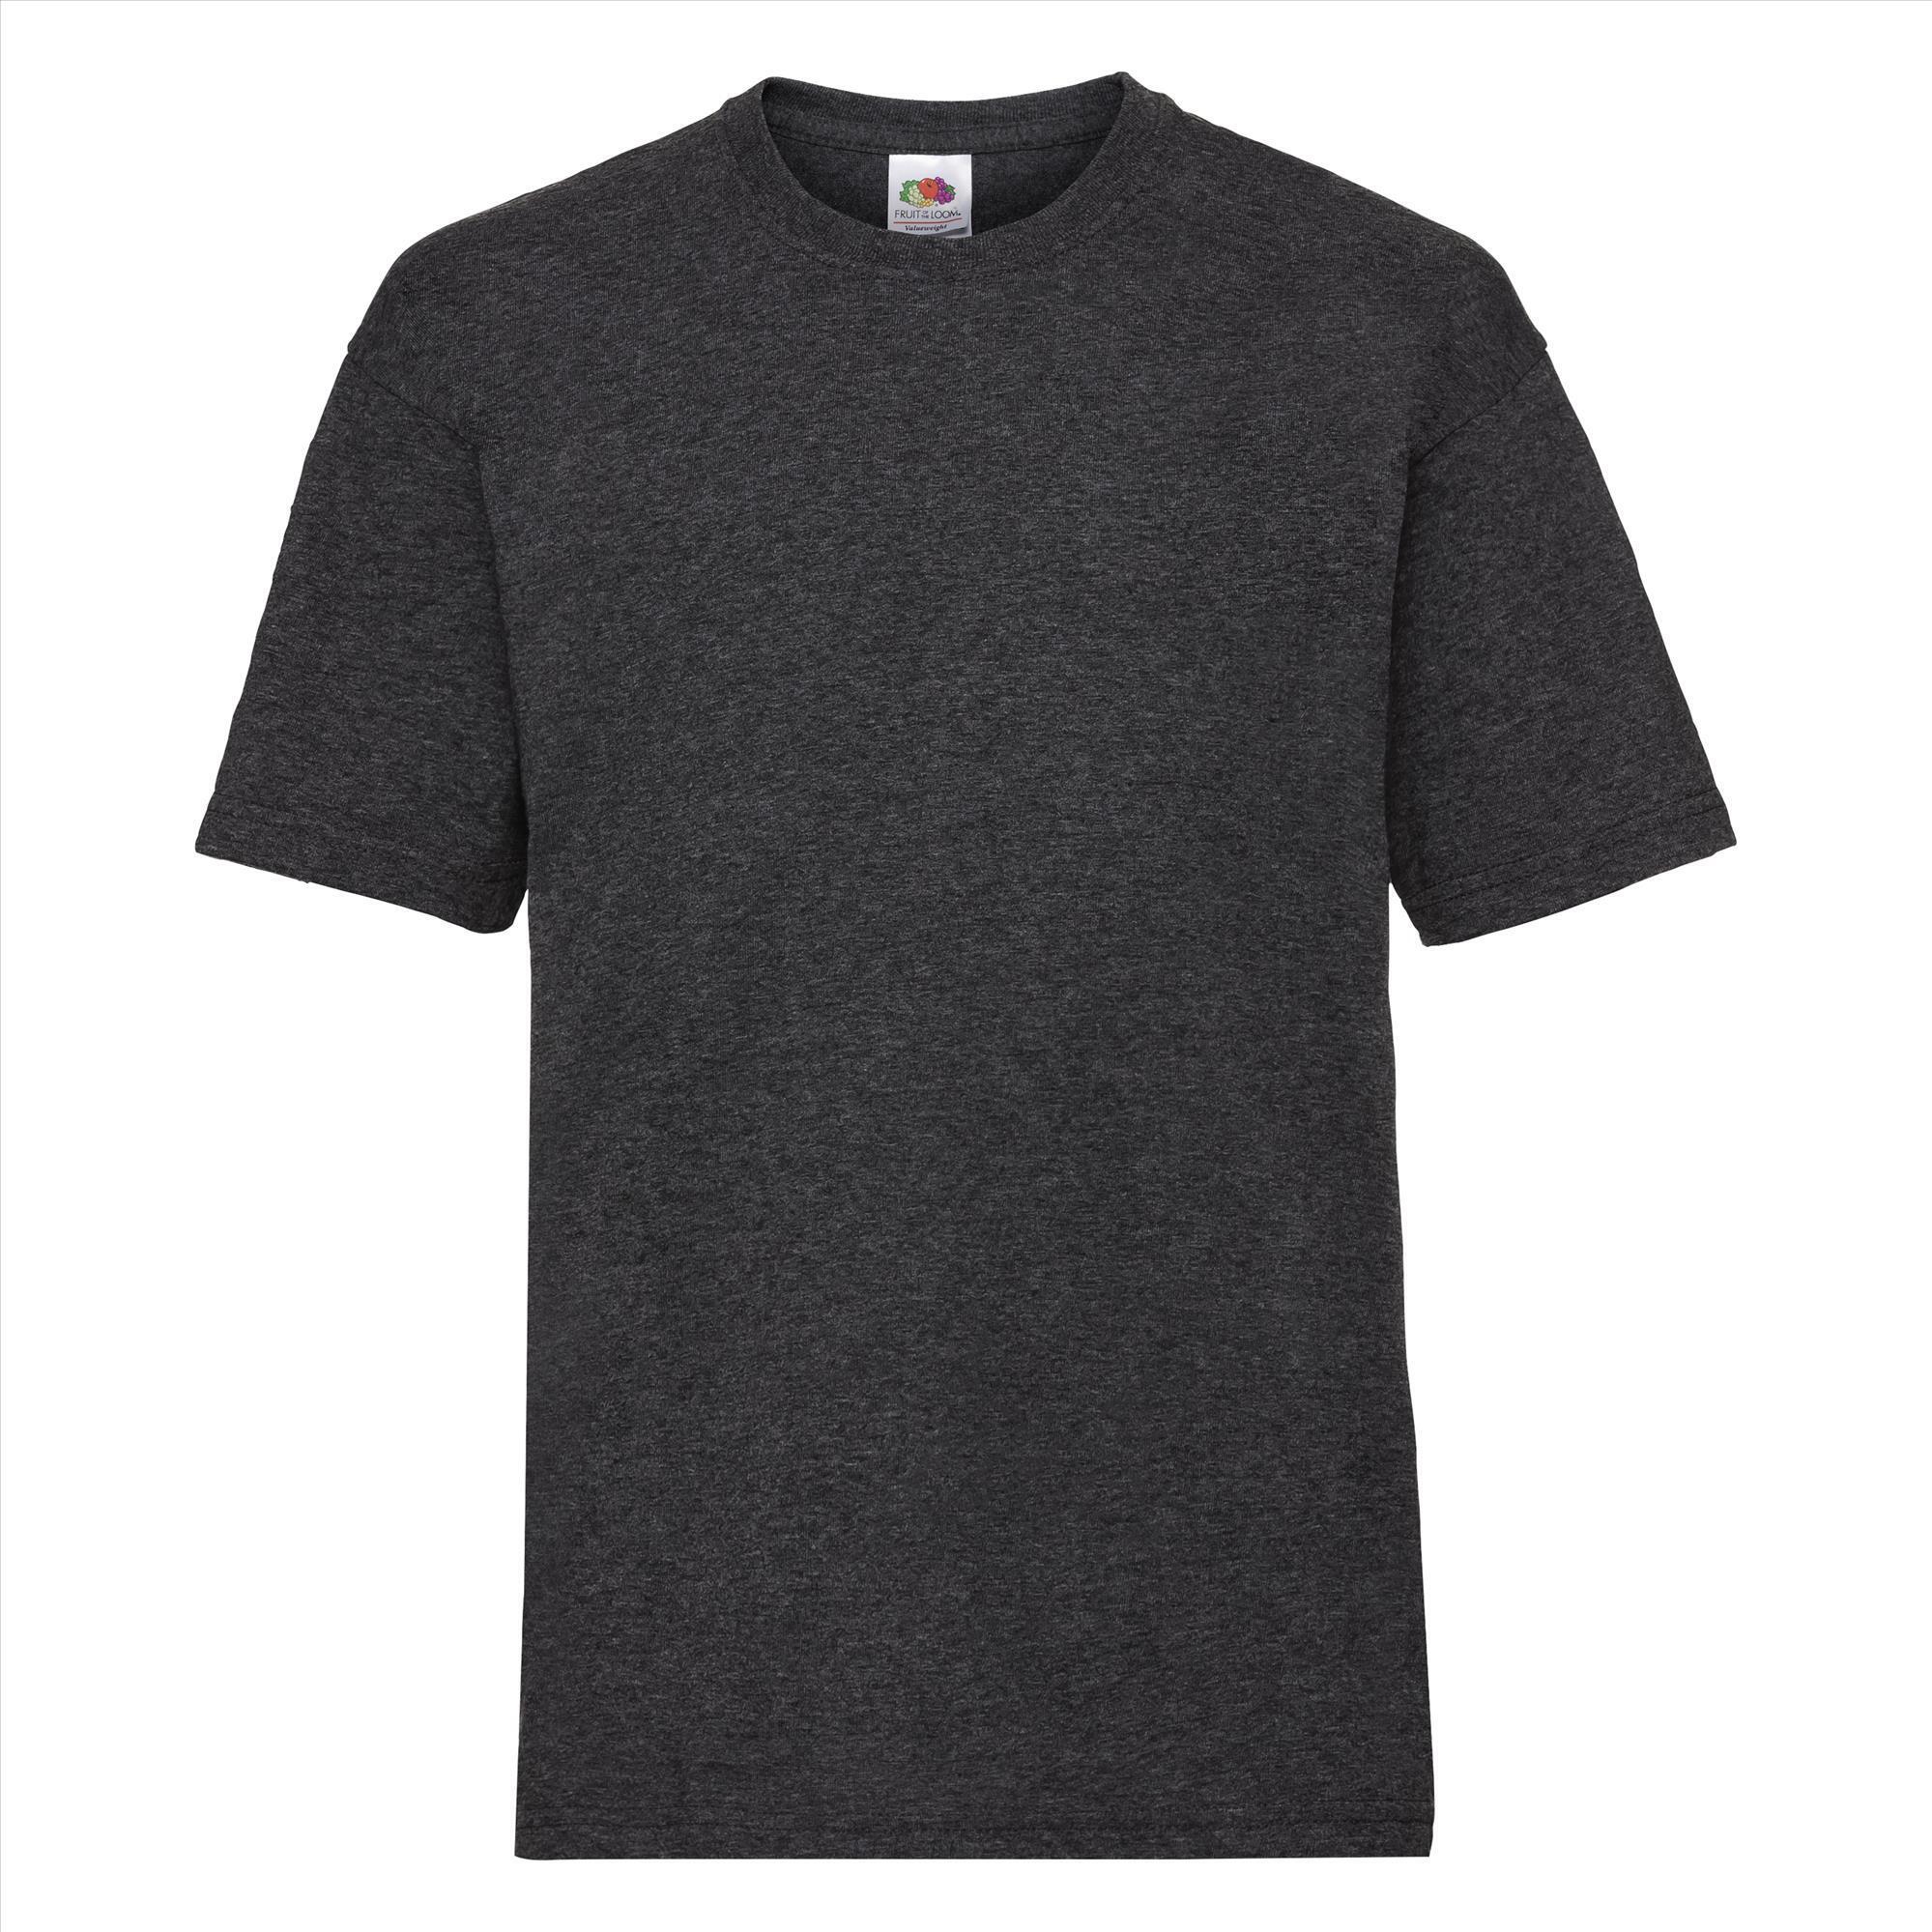 Gepersonaliseerde Kinder T-shirt donker gemêleerd grijs Kinderkleding bedrukken